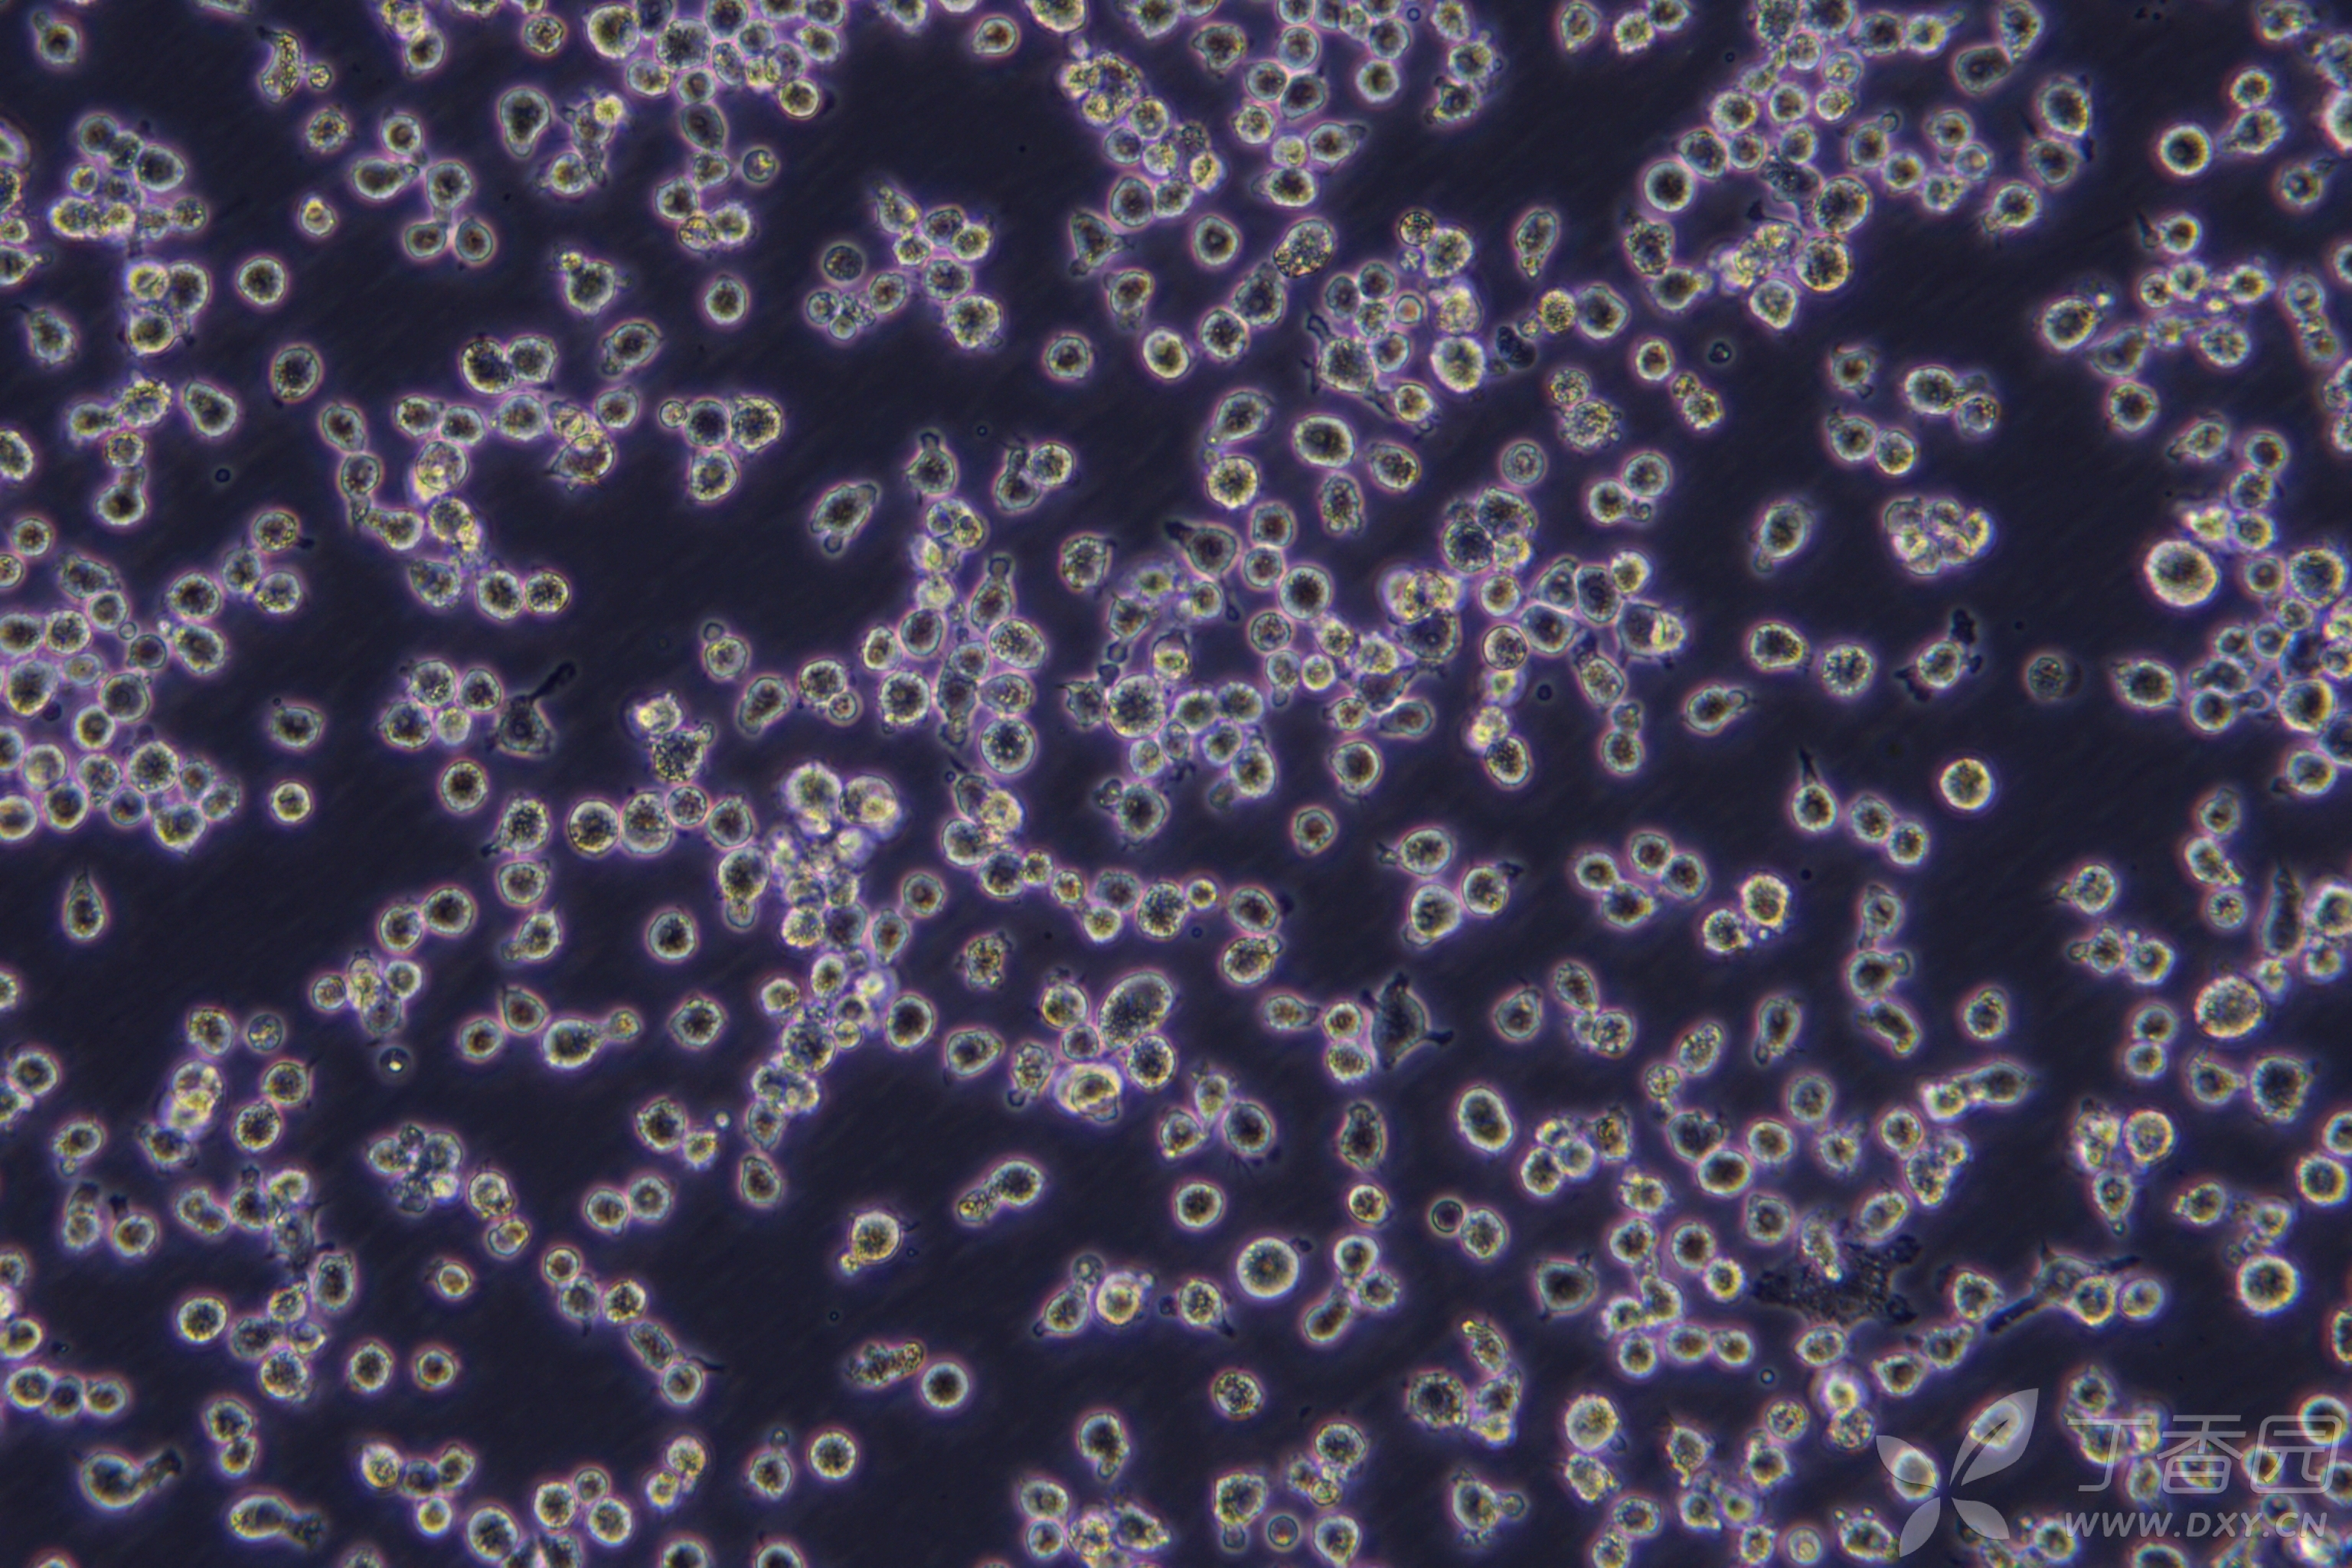 台盼蓝颗粒巨噬细胞图片